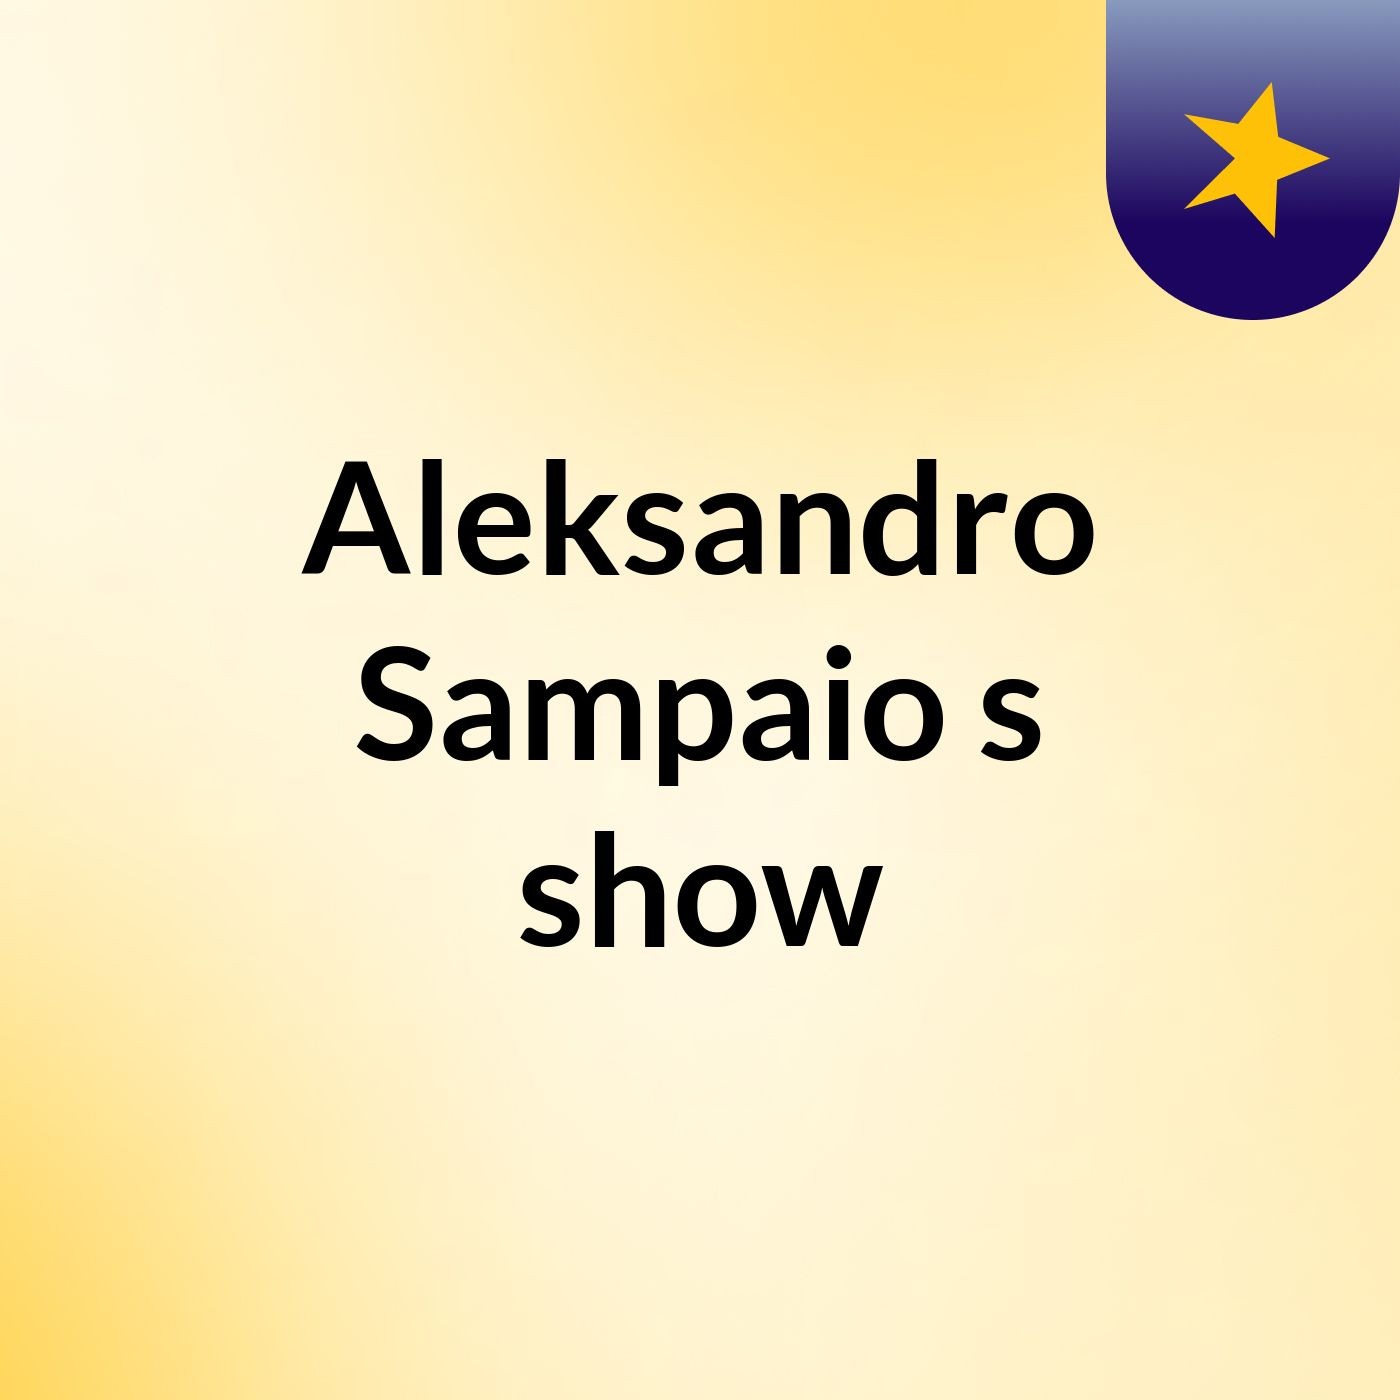 Aleksandro Sampaio's show